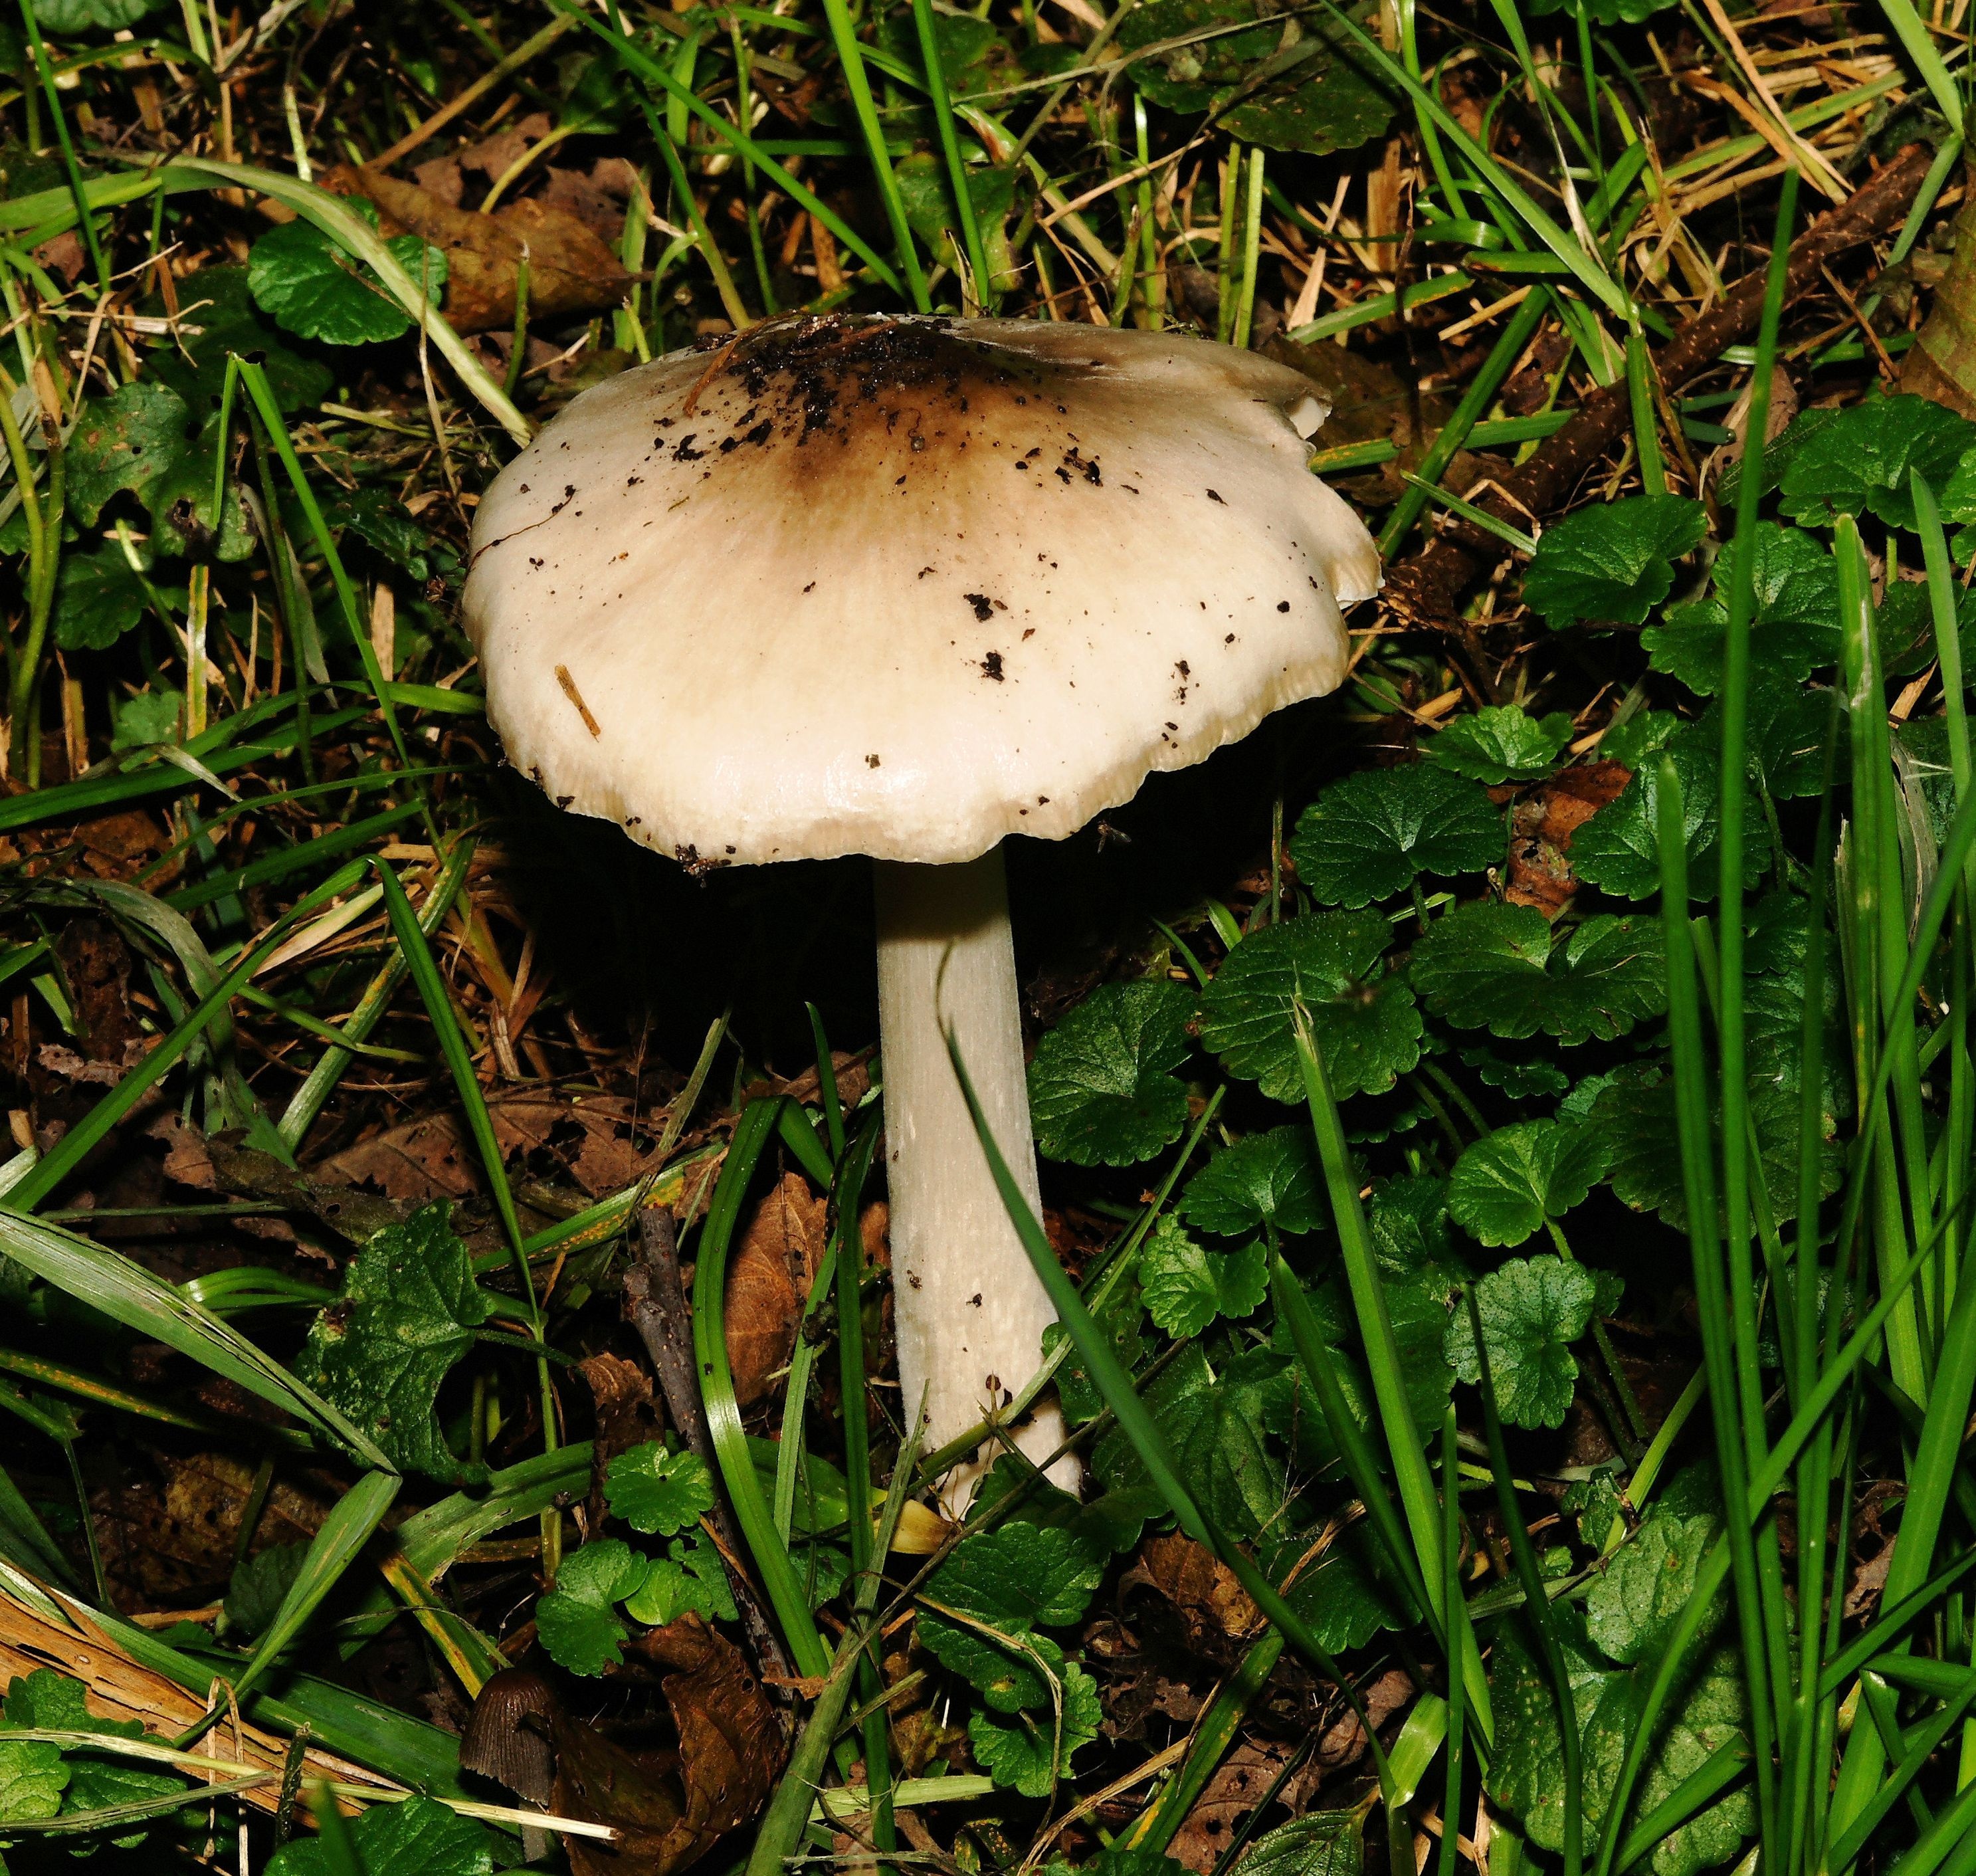 Какие грибы похожи на поганки